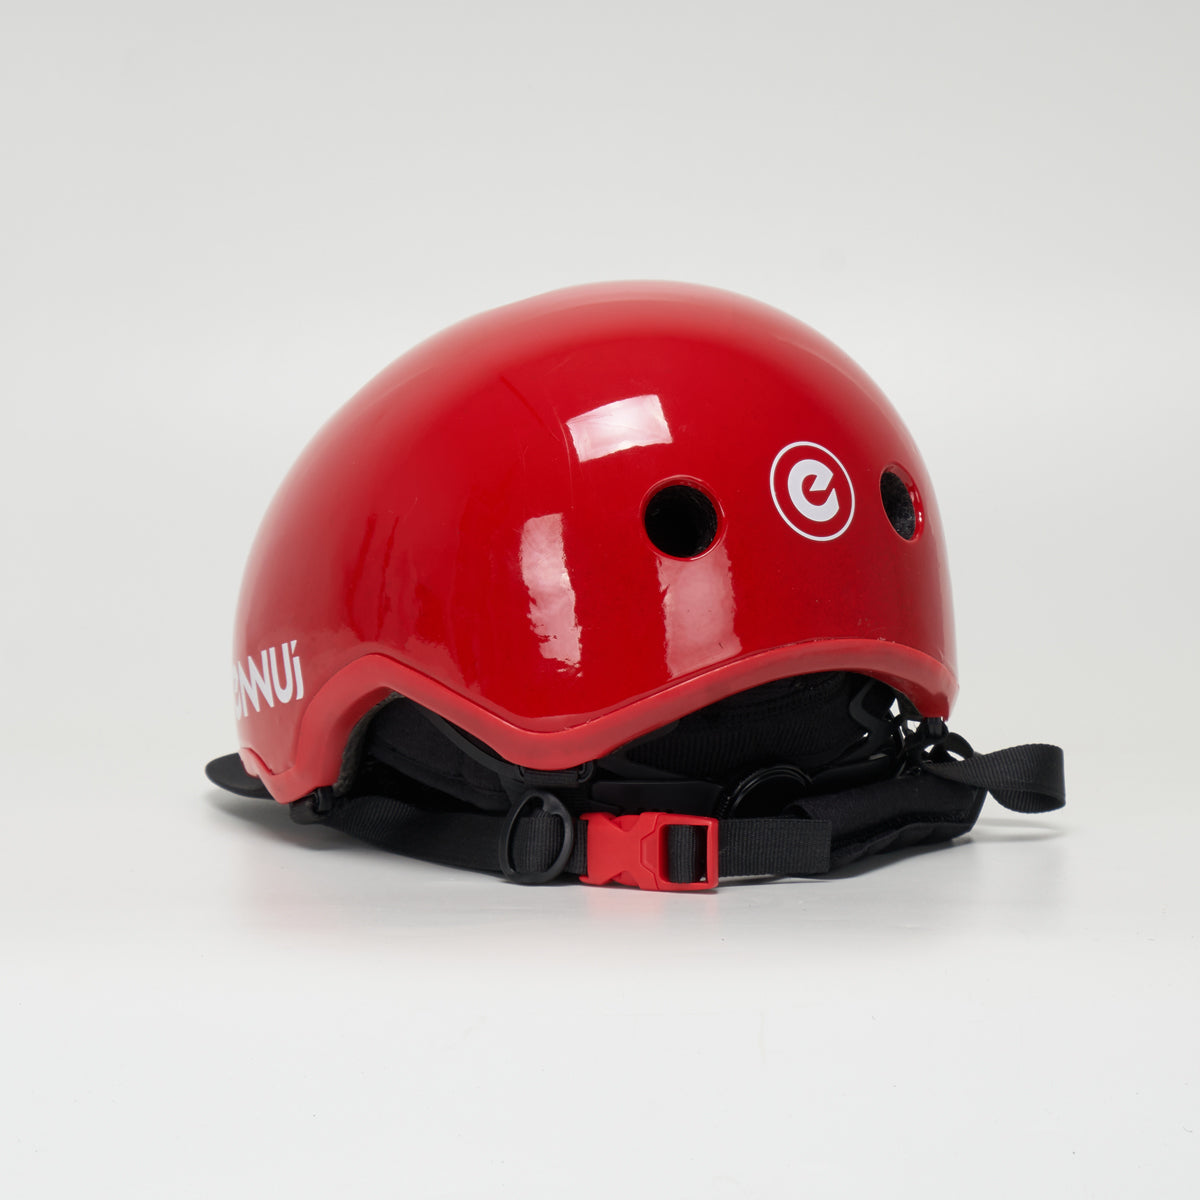 Ennui Elite Helmet - Red